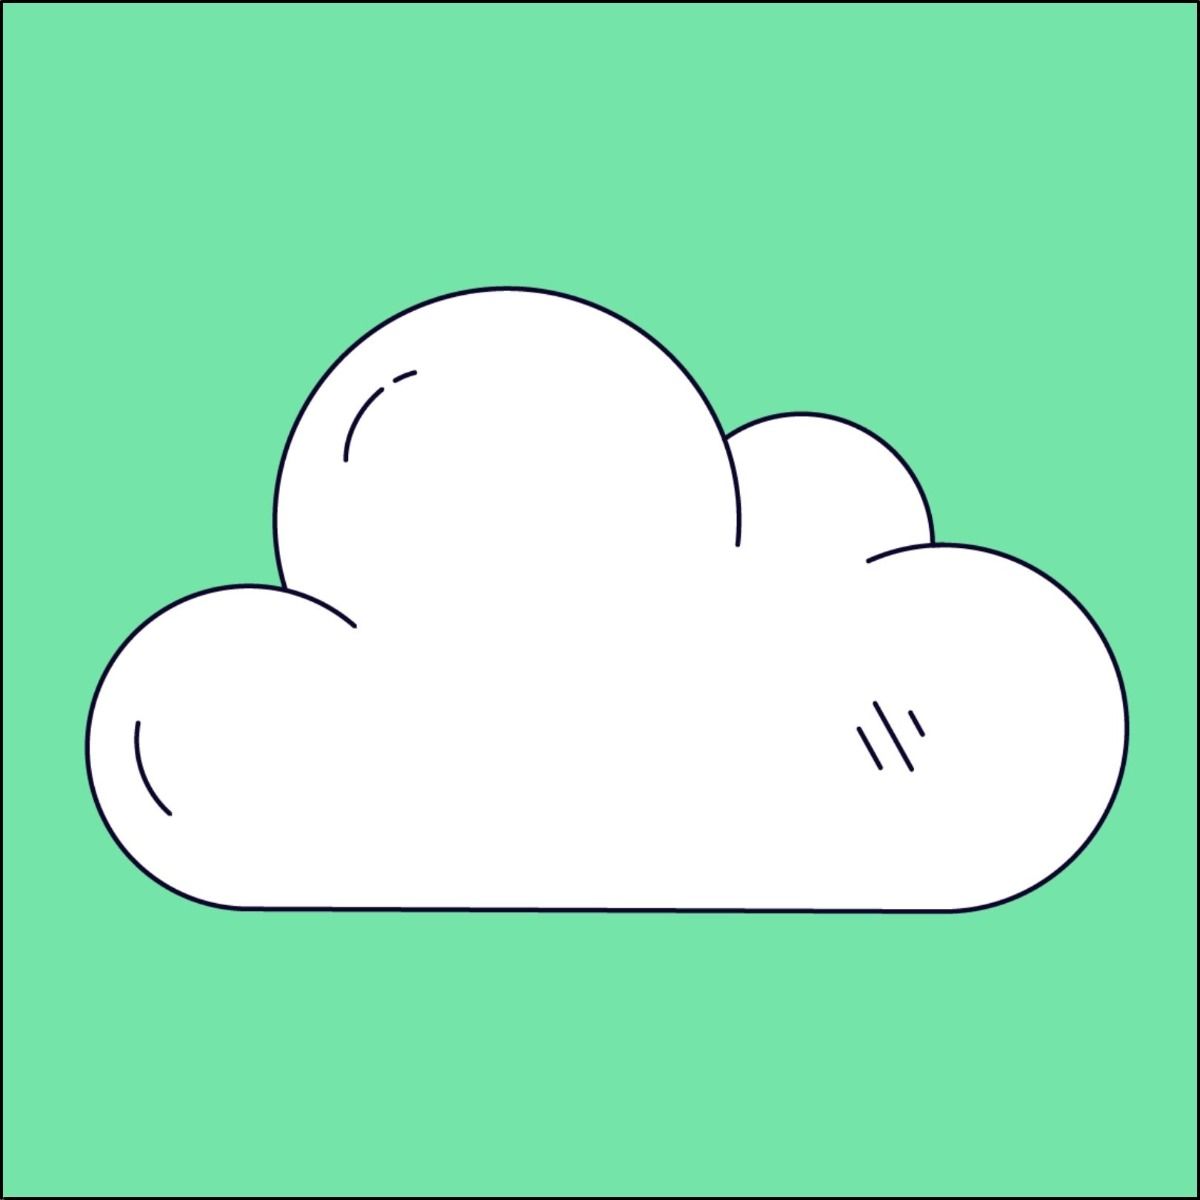 Magento Cloud Developer Study Guide